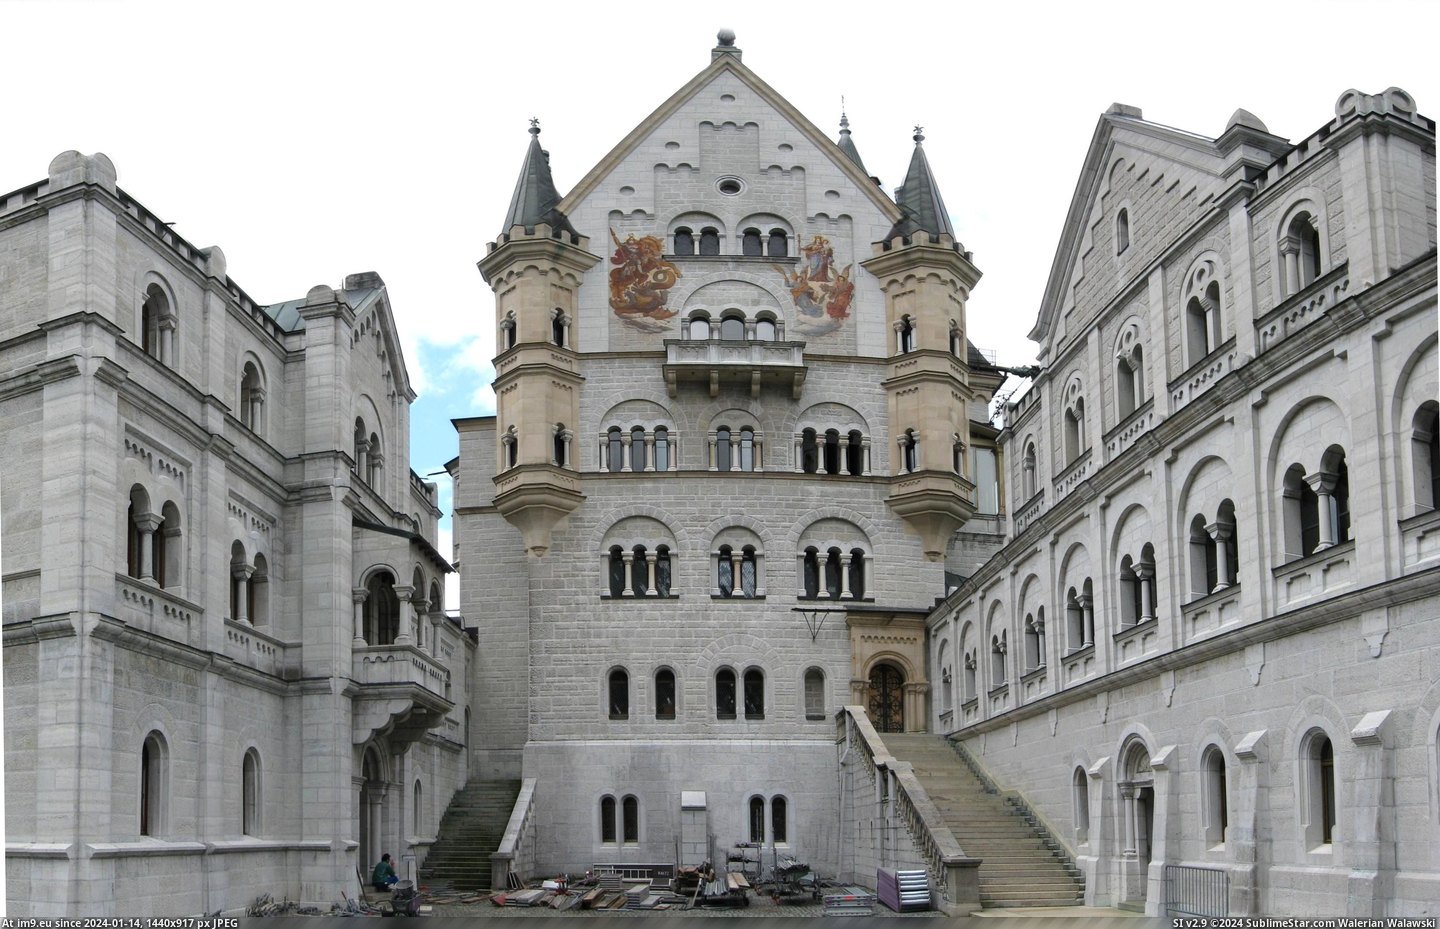 #Wallpaper #Architecture #Castles #Pano #Castle #Neuschwanstein Neuschwanstein Pano2 Pic. (Изображение из альбом Schloss Neuschwanstein (Neuschwanstein Castle)))